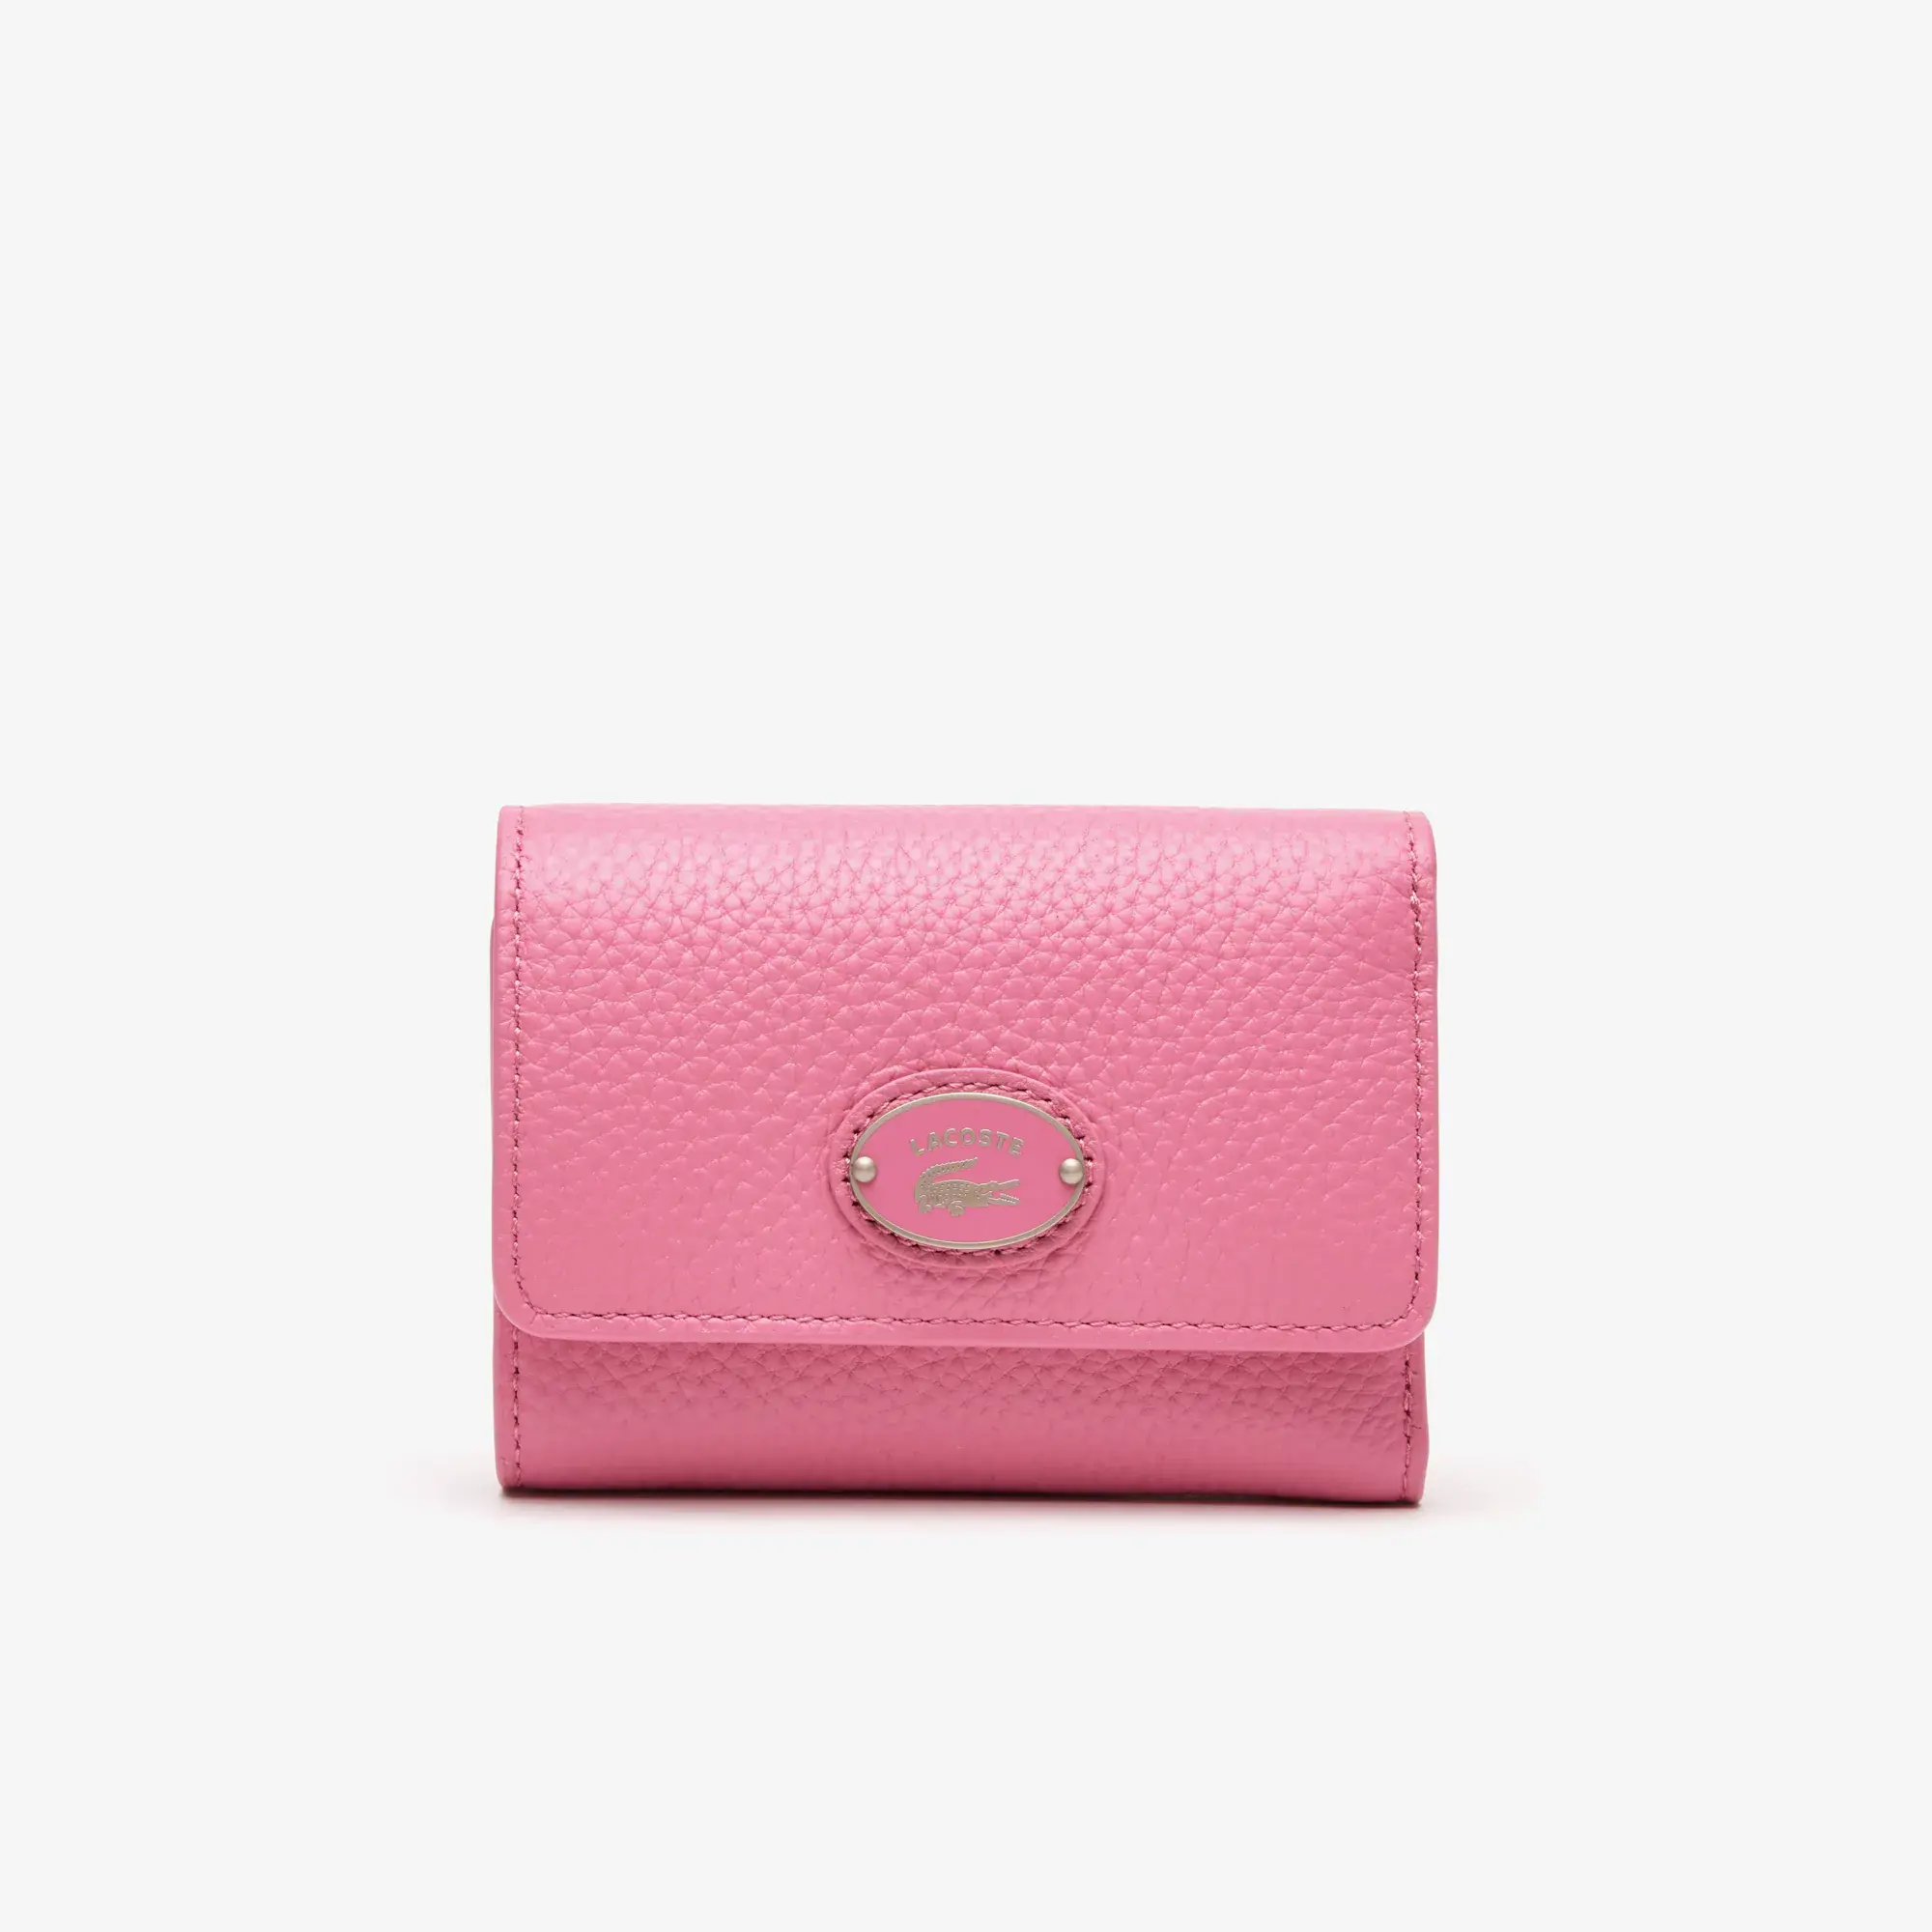 Lacoste Women’s Top Grain Leather Flap Close Wallet. 1